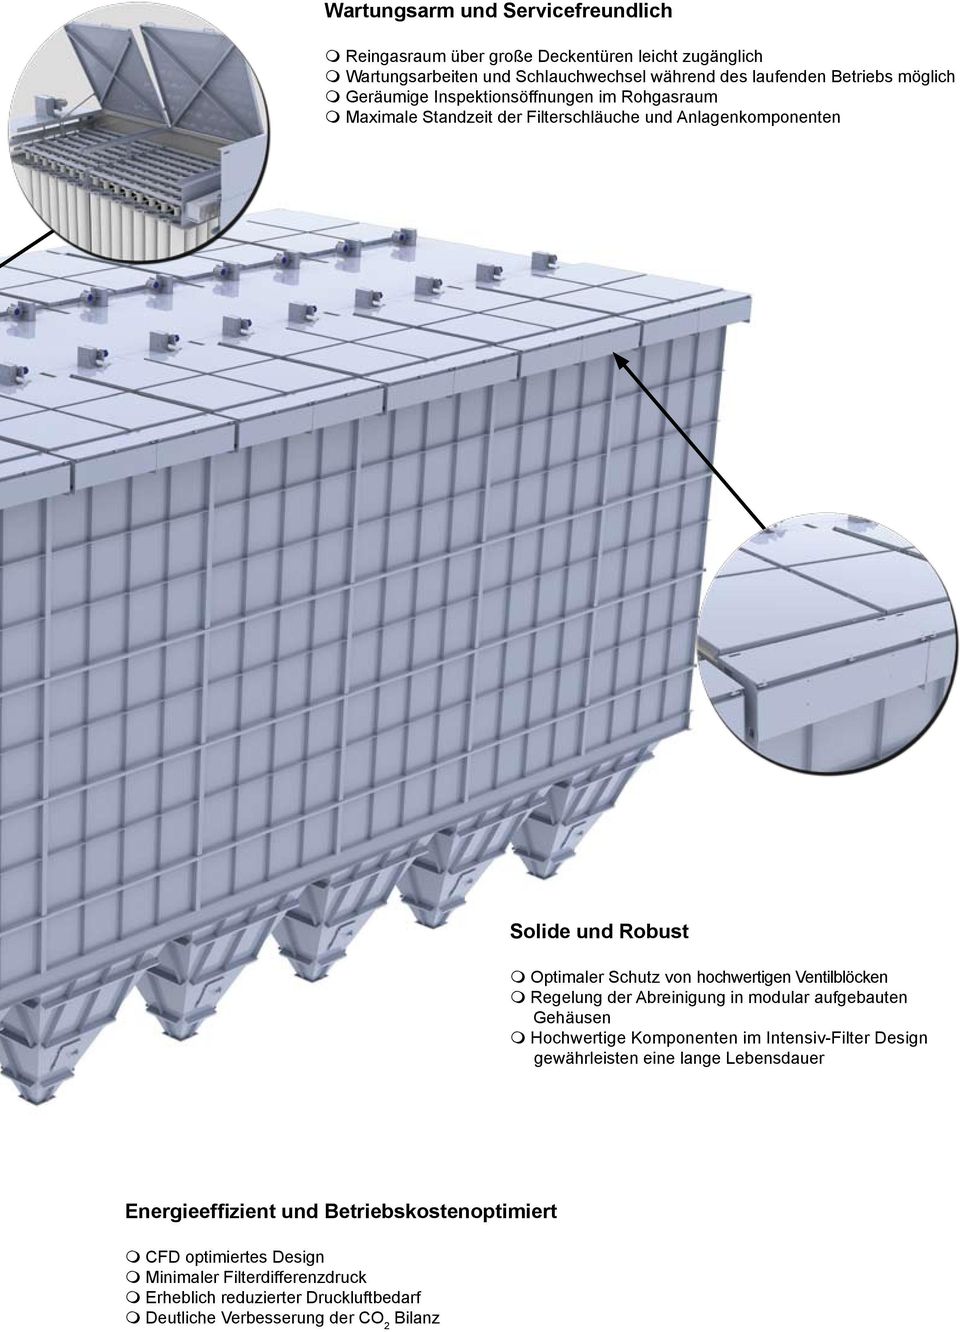 Ventilblöcken m Regelung der Abreinigung in modular aufgebauten Gehäusen m Hochwertige Komponenten im Intensiv-Filter Design gewährleisten eine lange Lebensdauer